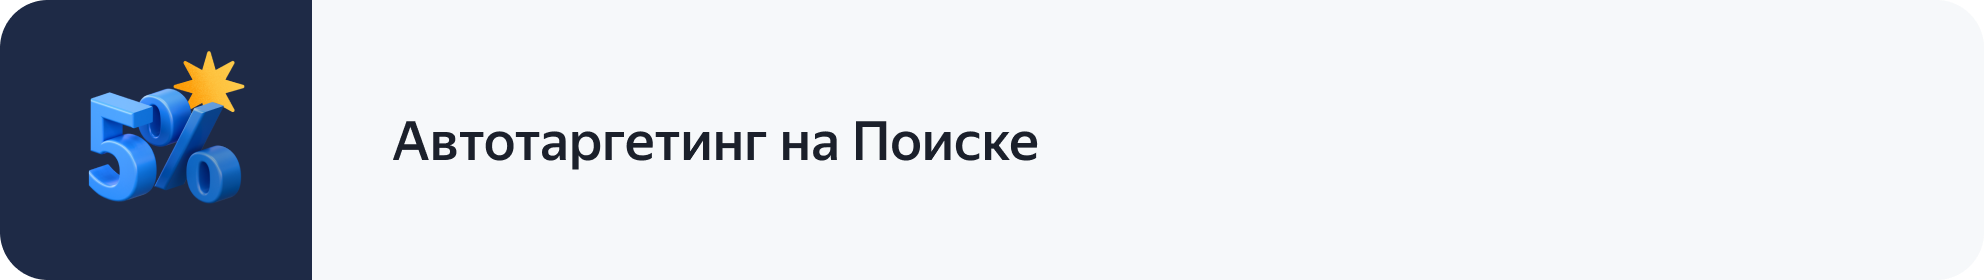 В новый год с новыми бонусными акциями — Новости рекламных технологий Яндекса3